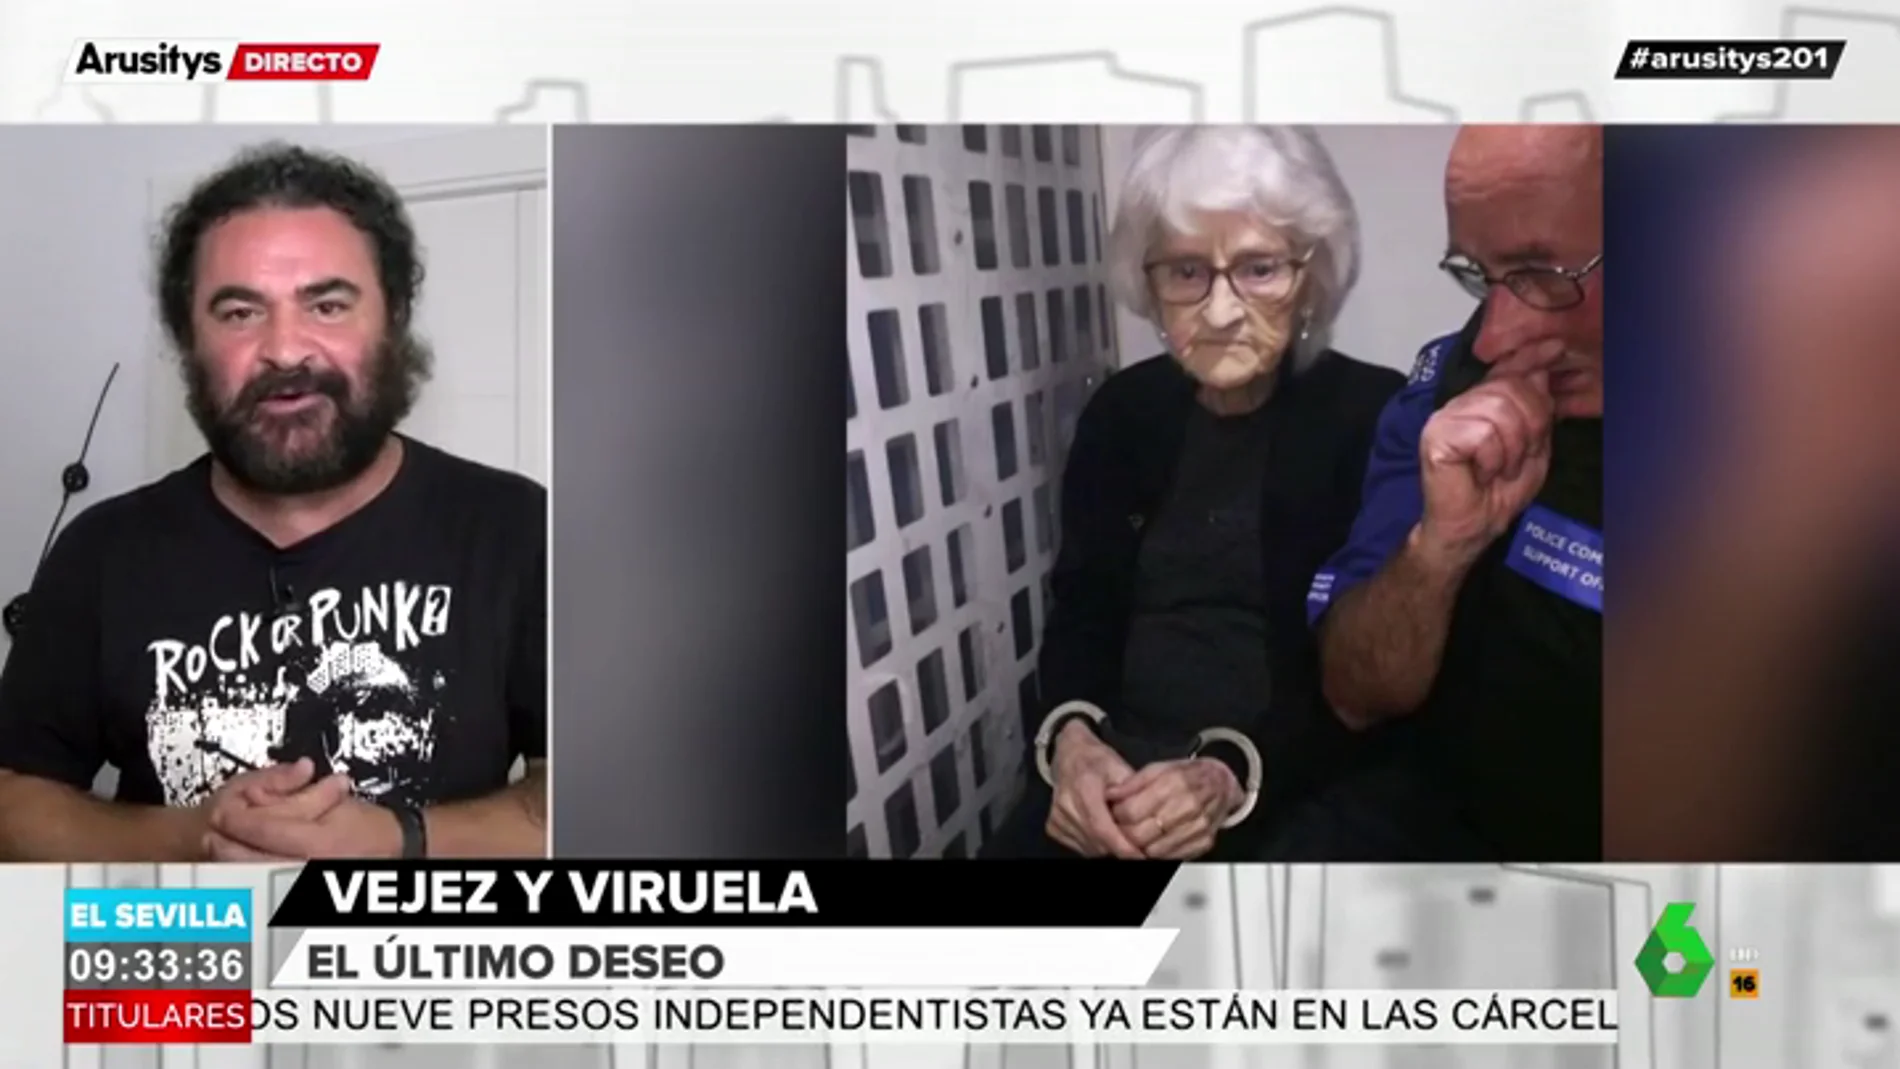 El Sevilla alucina al conocer el último y excéntrico desea de una anciana